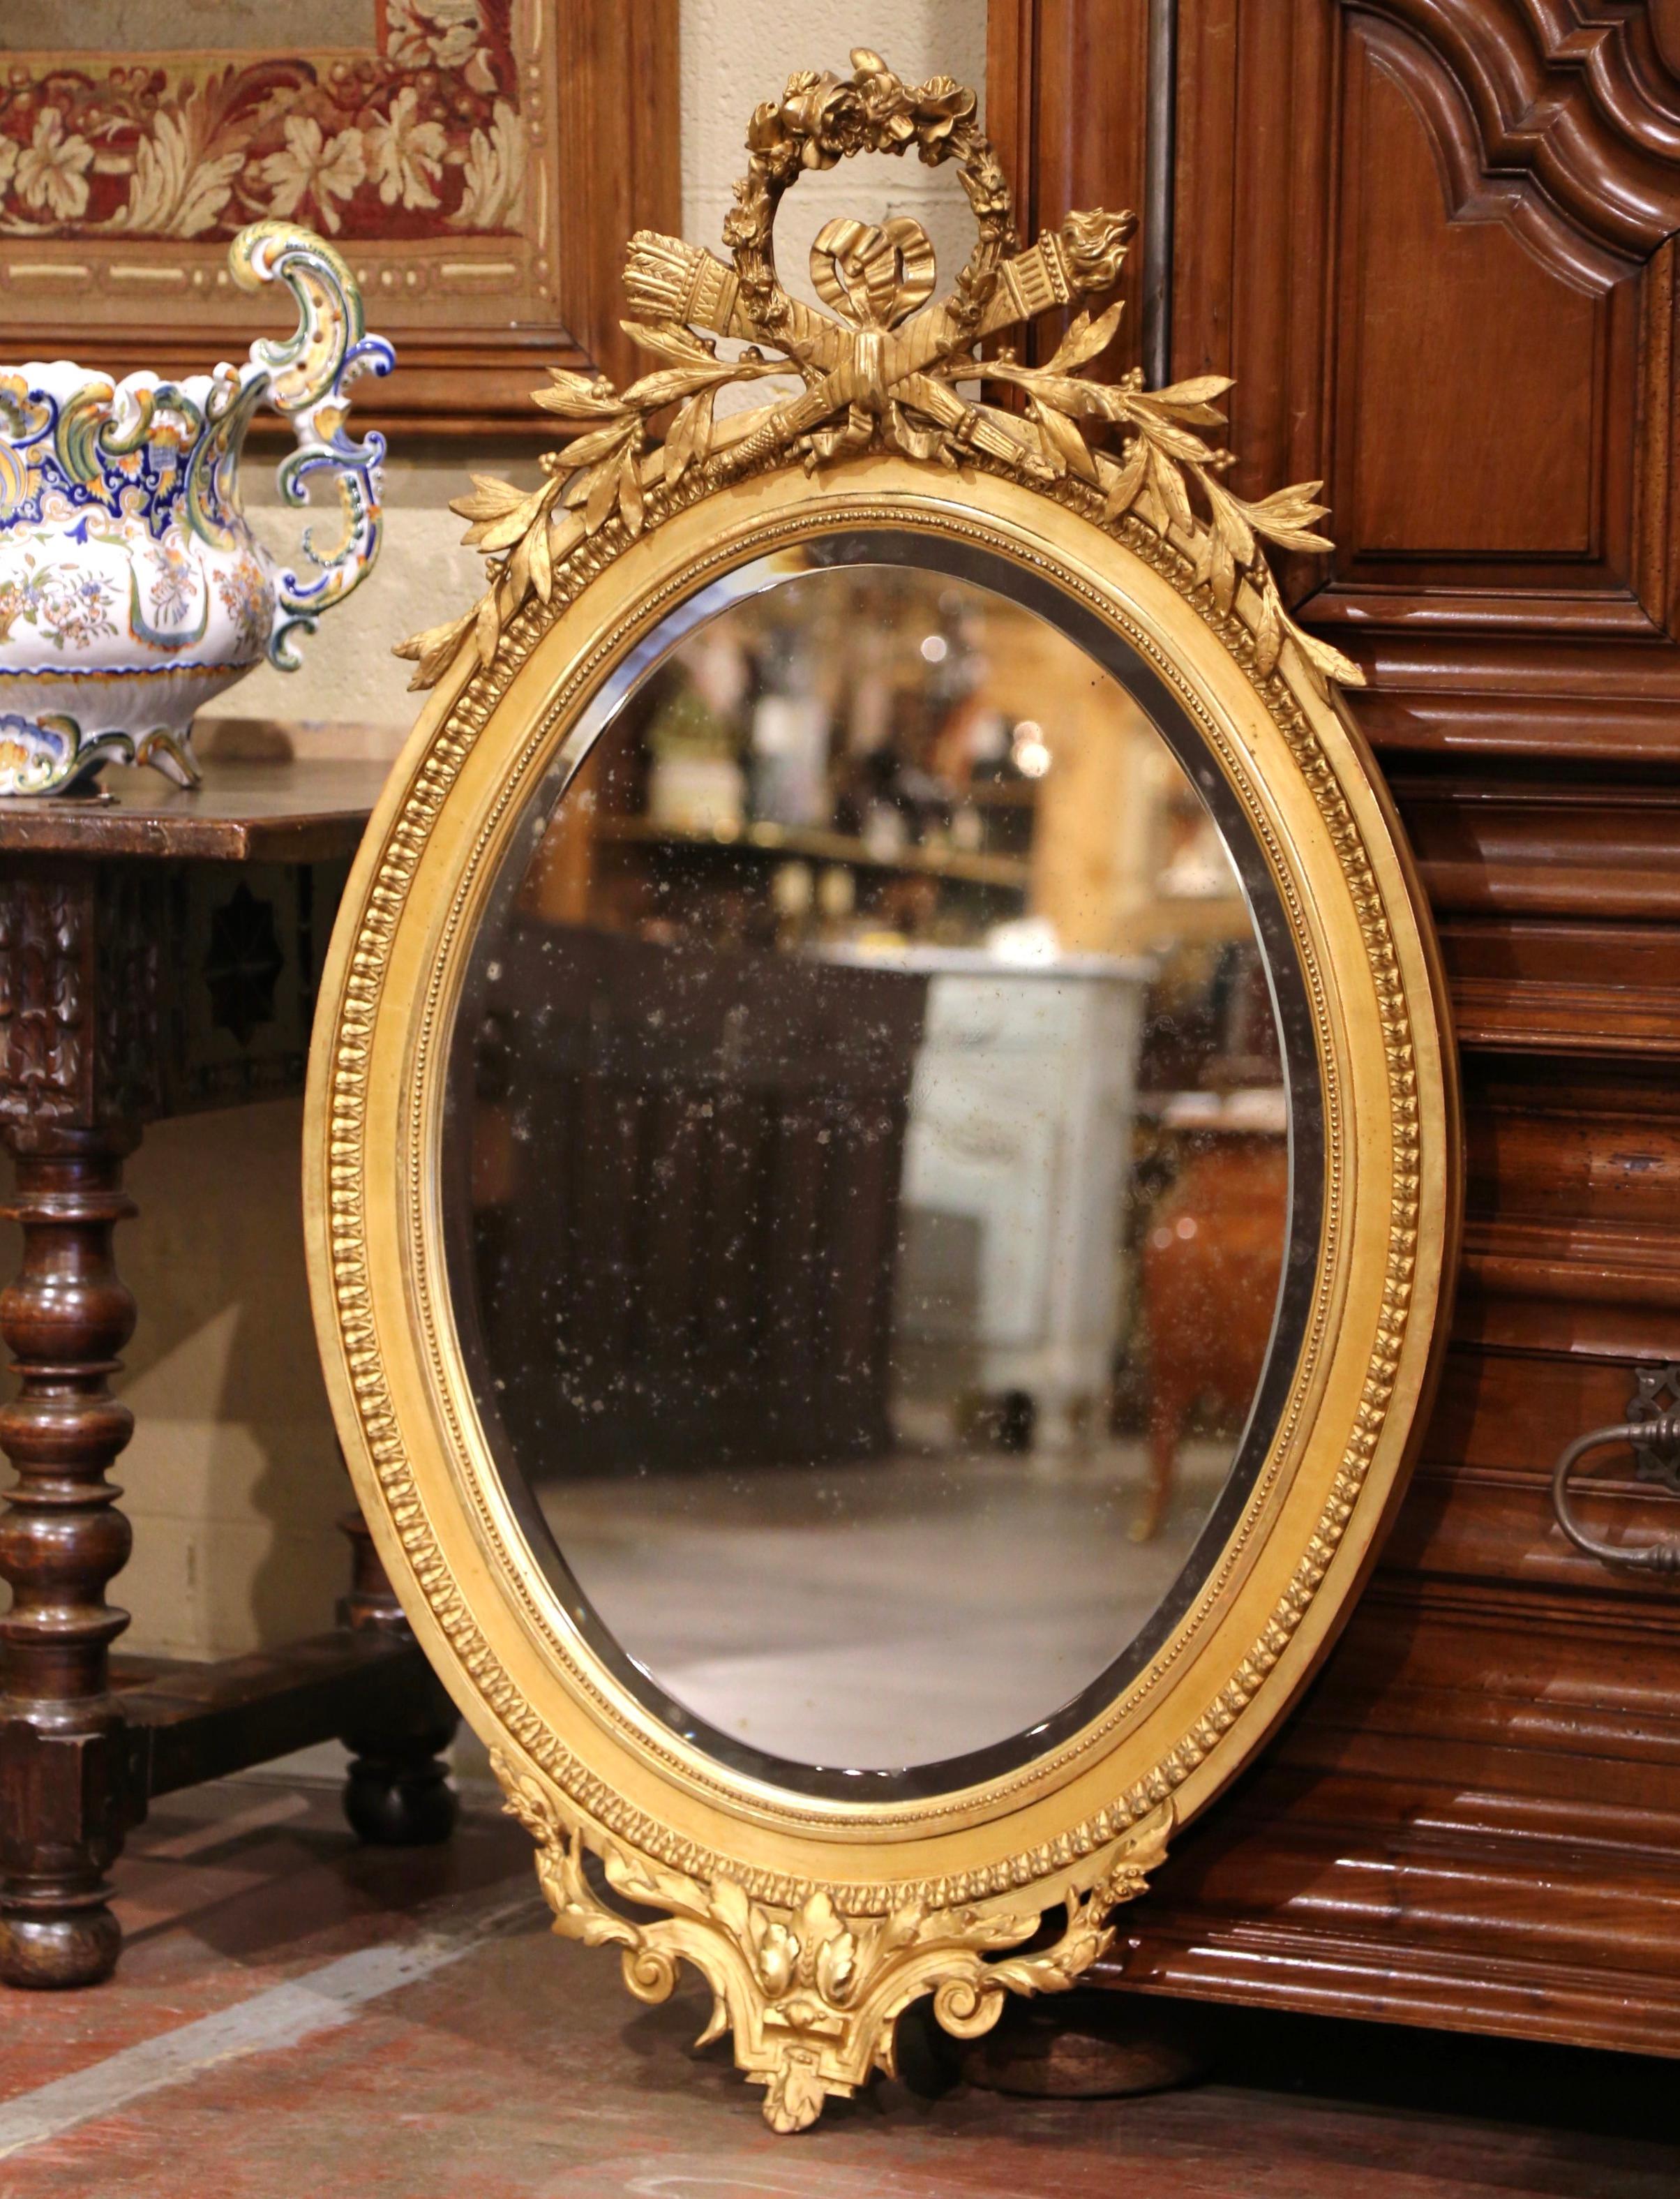 Décorez une salle d'eau ou une entrée avec cet élégant miroir mural doré antique. Fabriqué en France vers 1870, le cadre ovale perlé est décoré d'un grand cartouche au fronton avec des motifs floraux, un décor de torche et une feuille de laurier sur